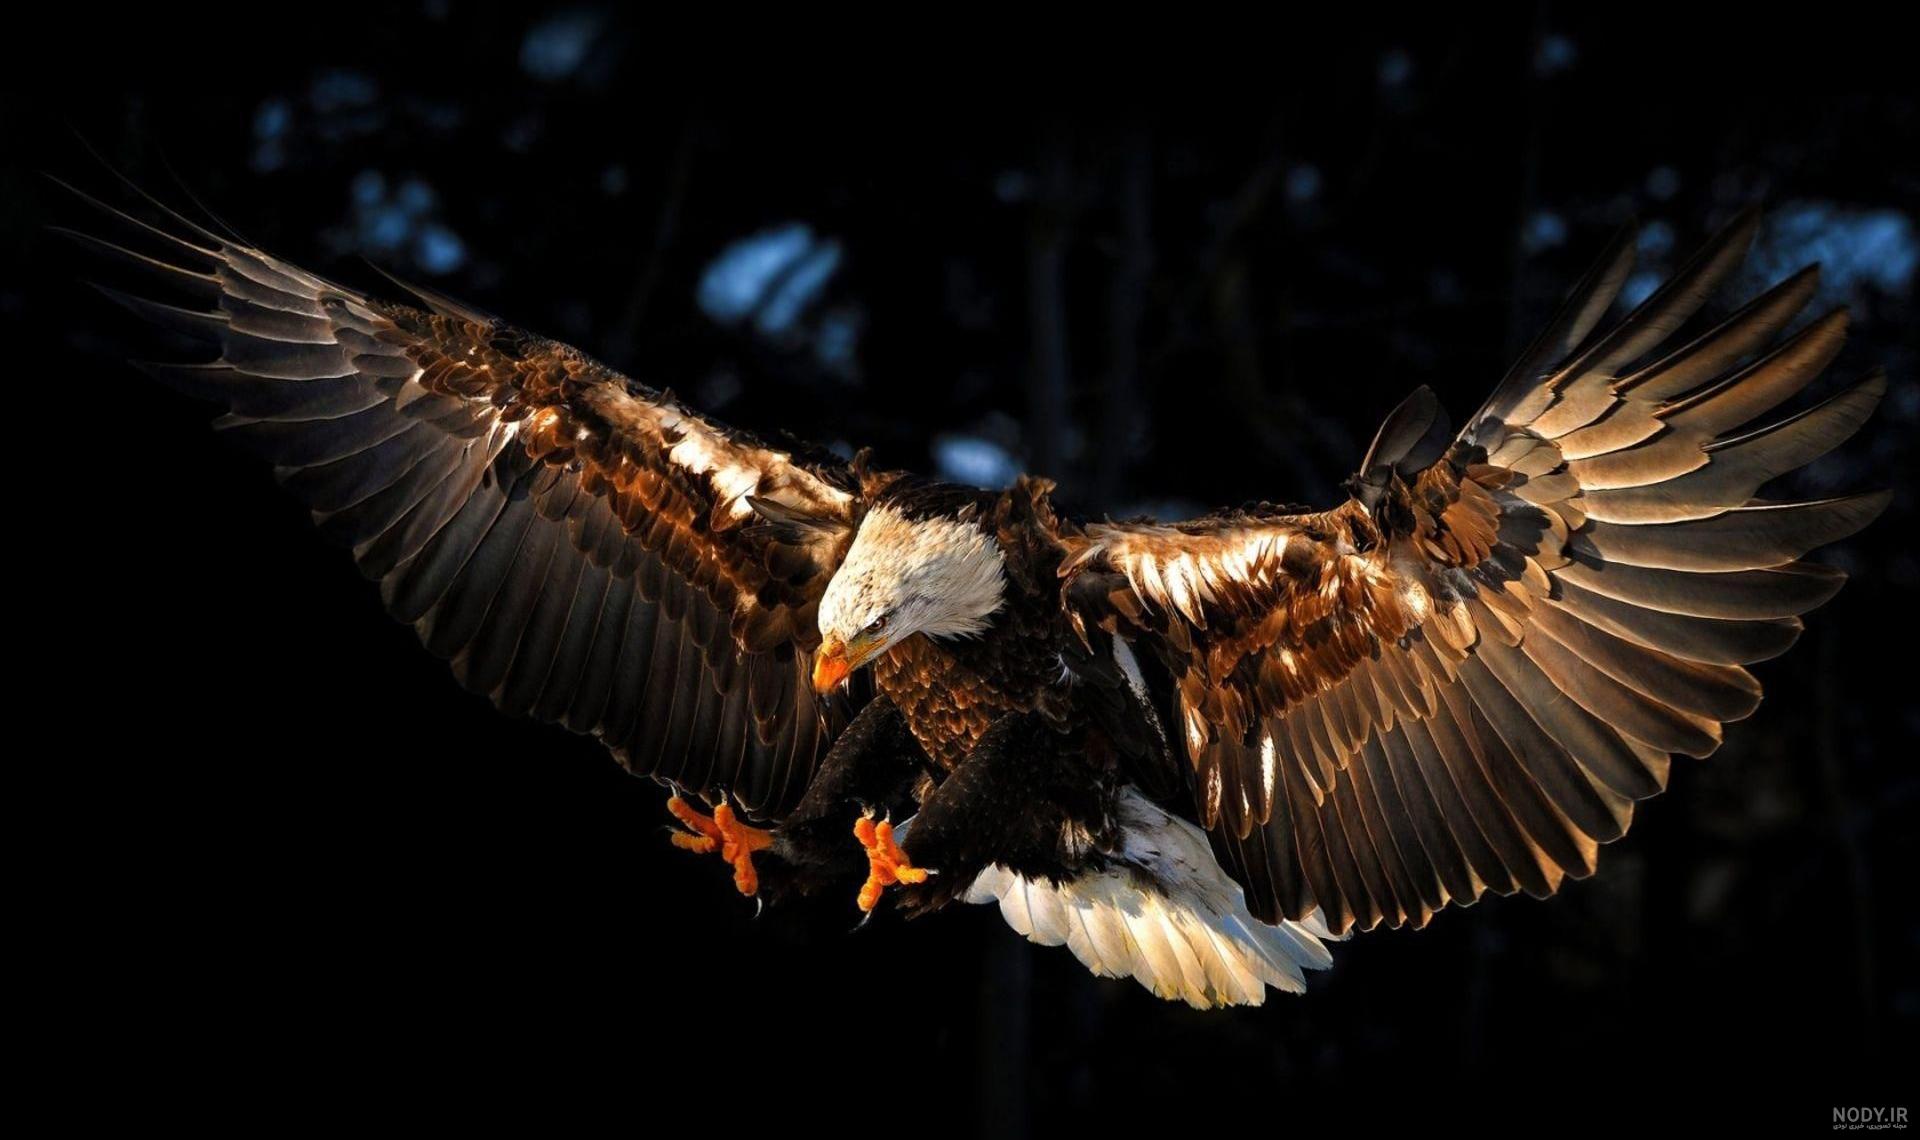 عکس عقاب سفید در حال پرواز